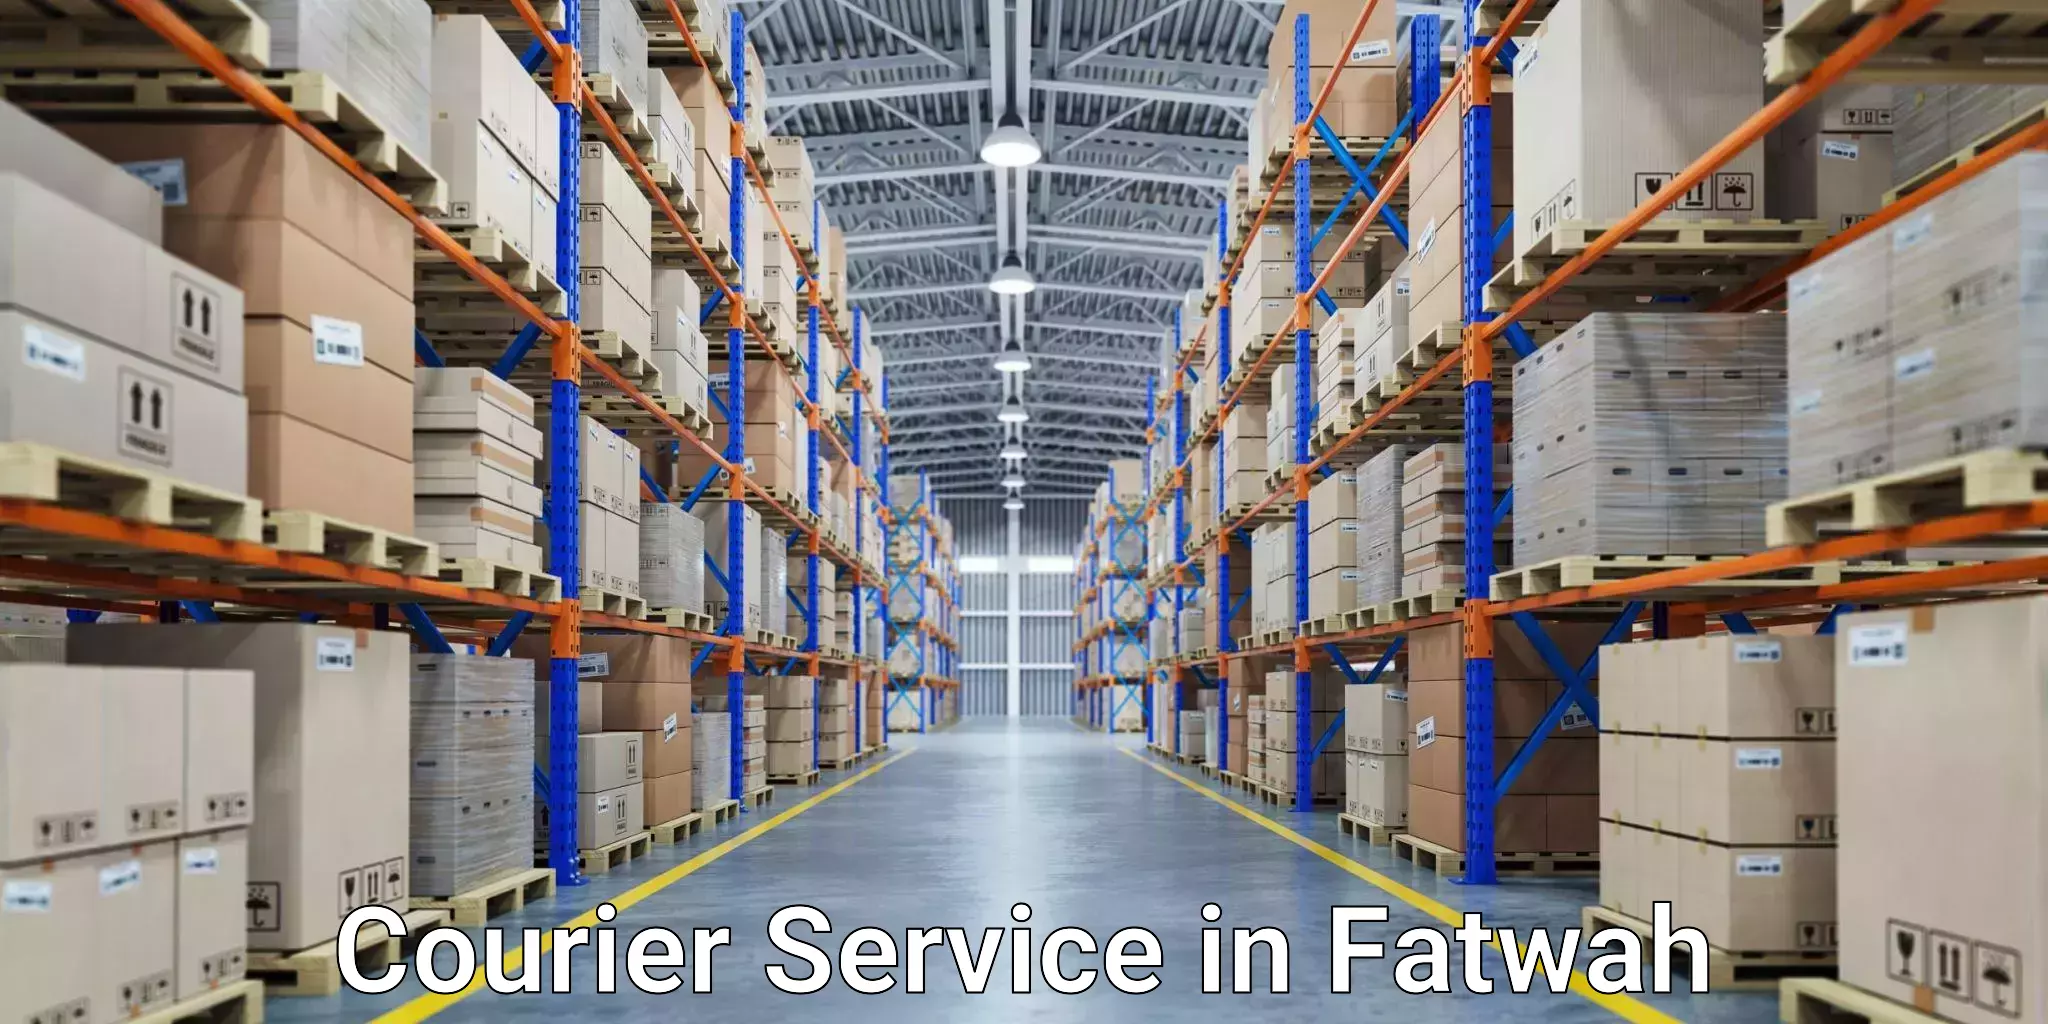 Express shipping in Fatwah